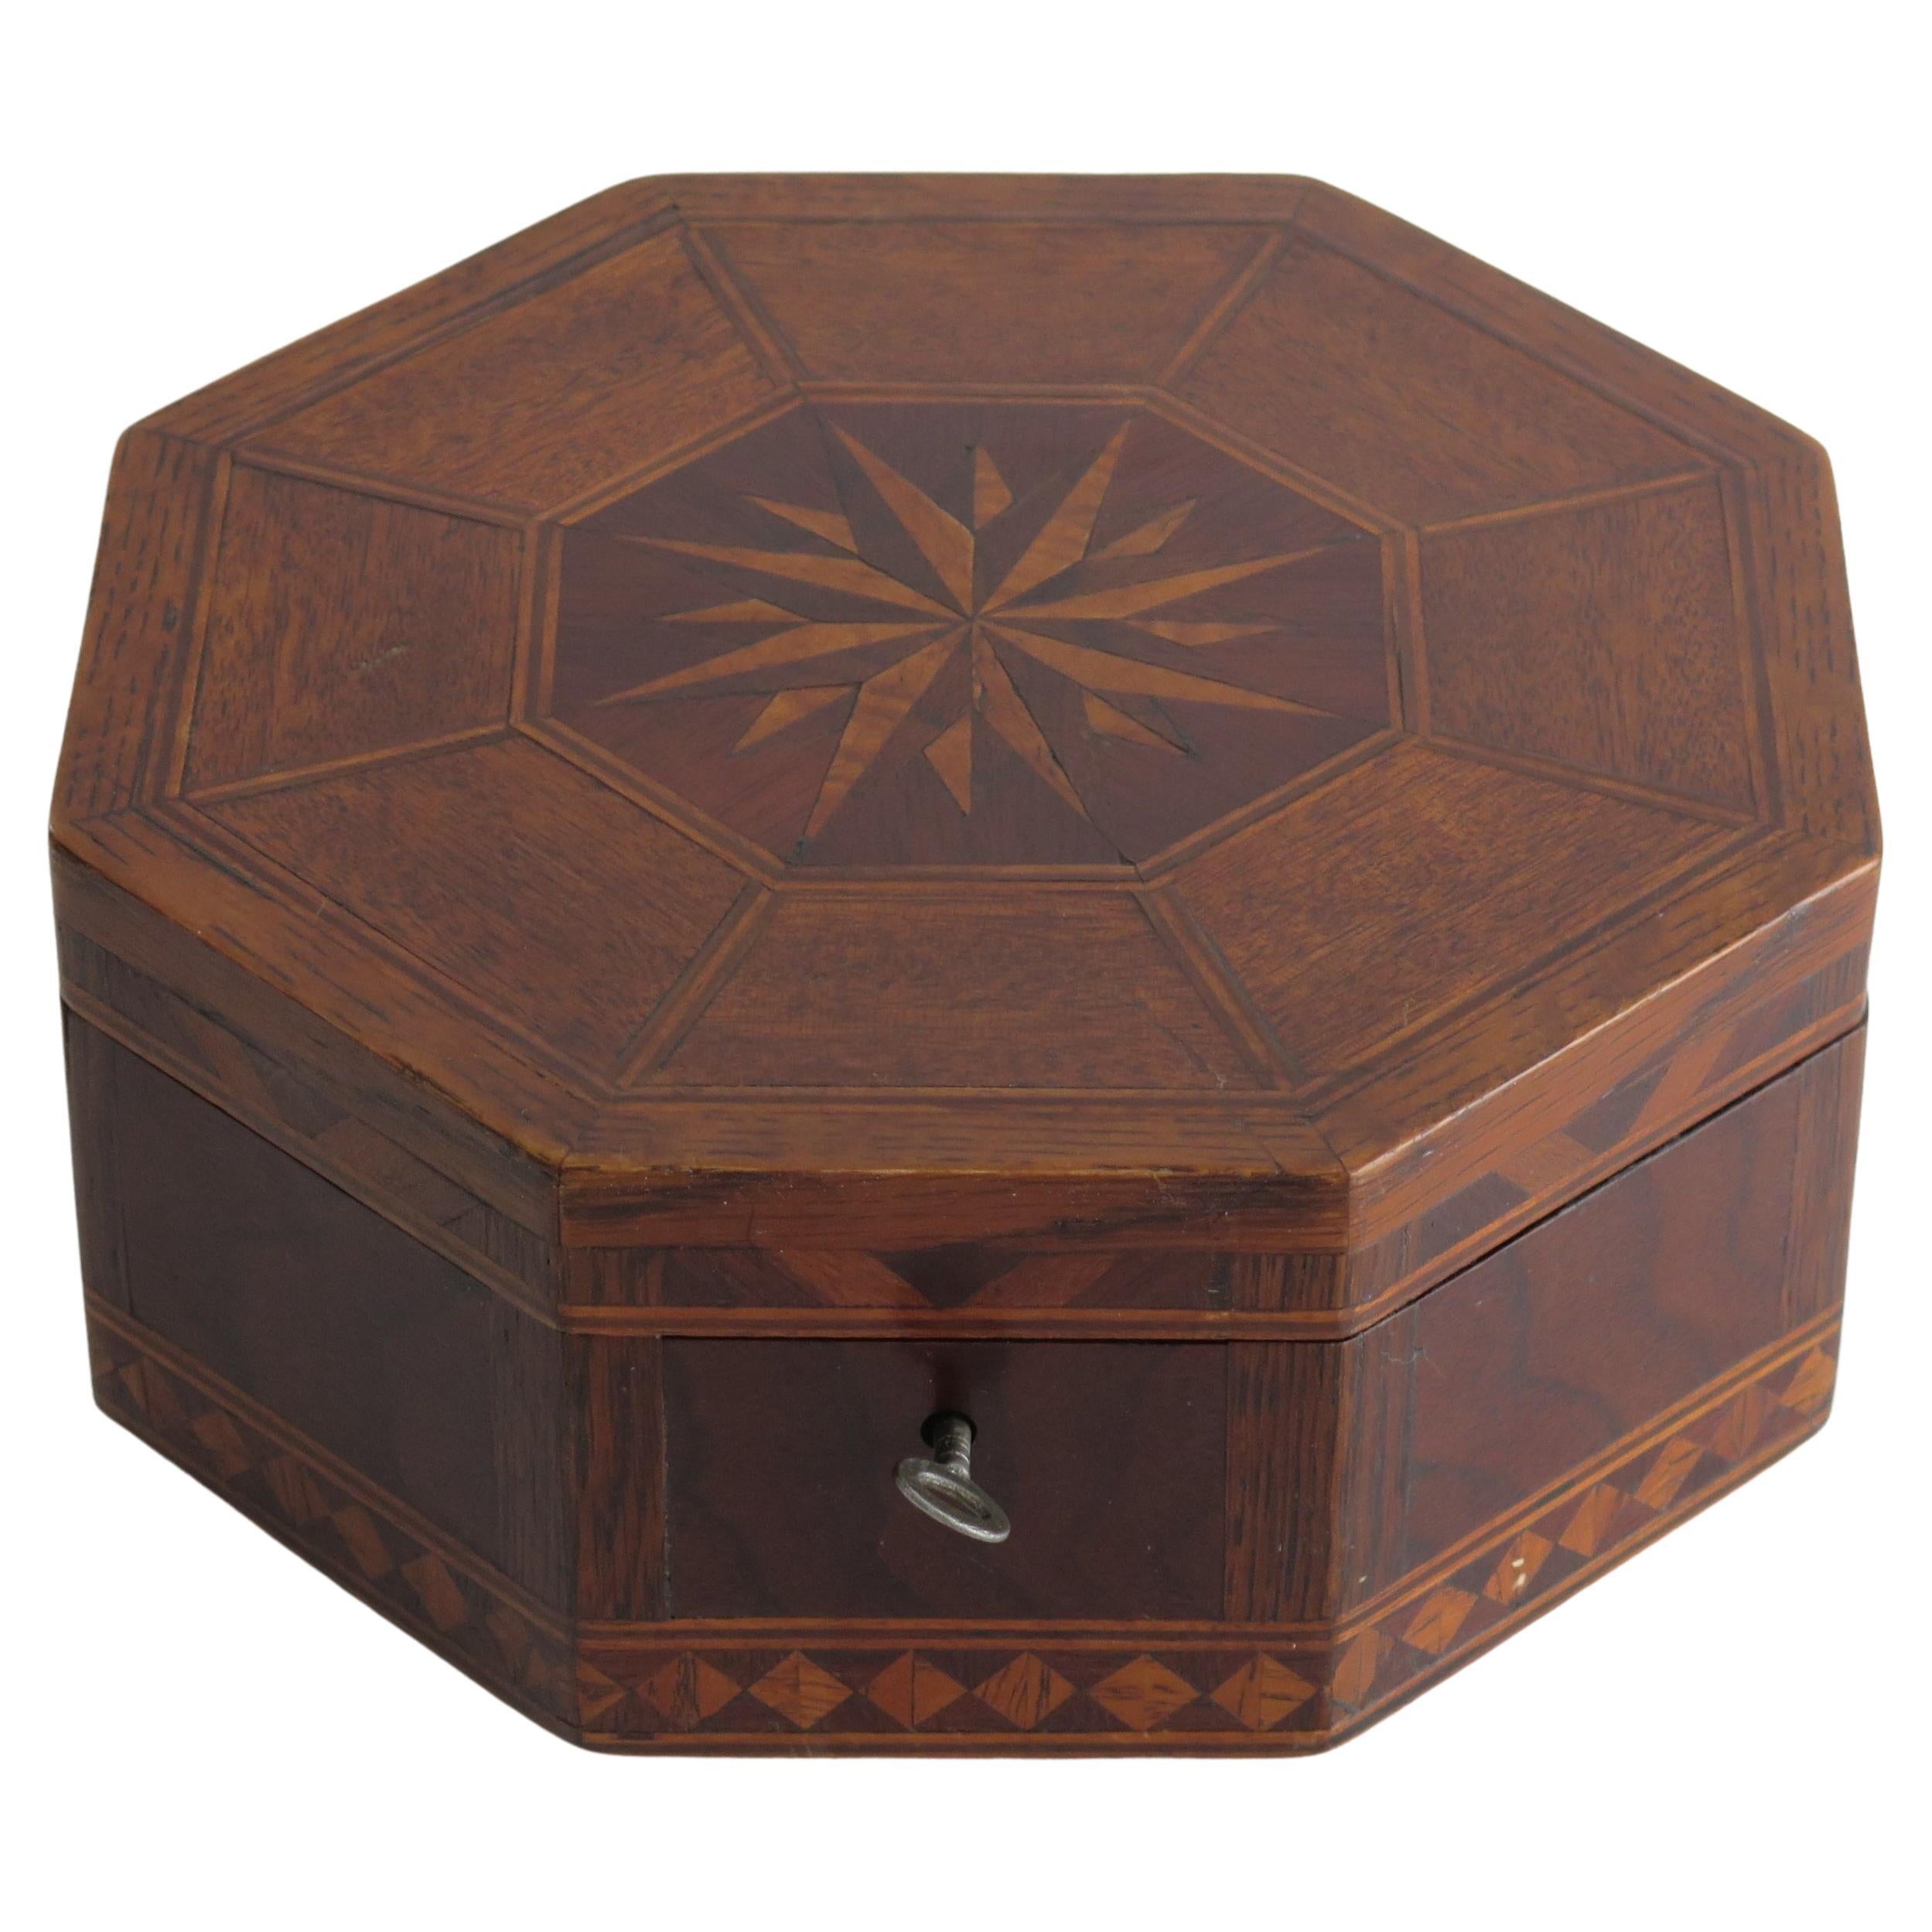 Boîte octogonale en bois de feuillus incrustée avec intérieur et clé ajustés, anglaise début du 19e siècle